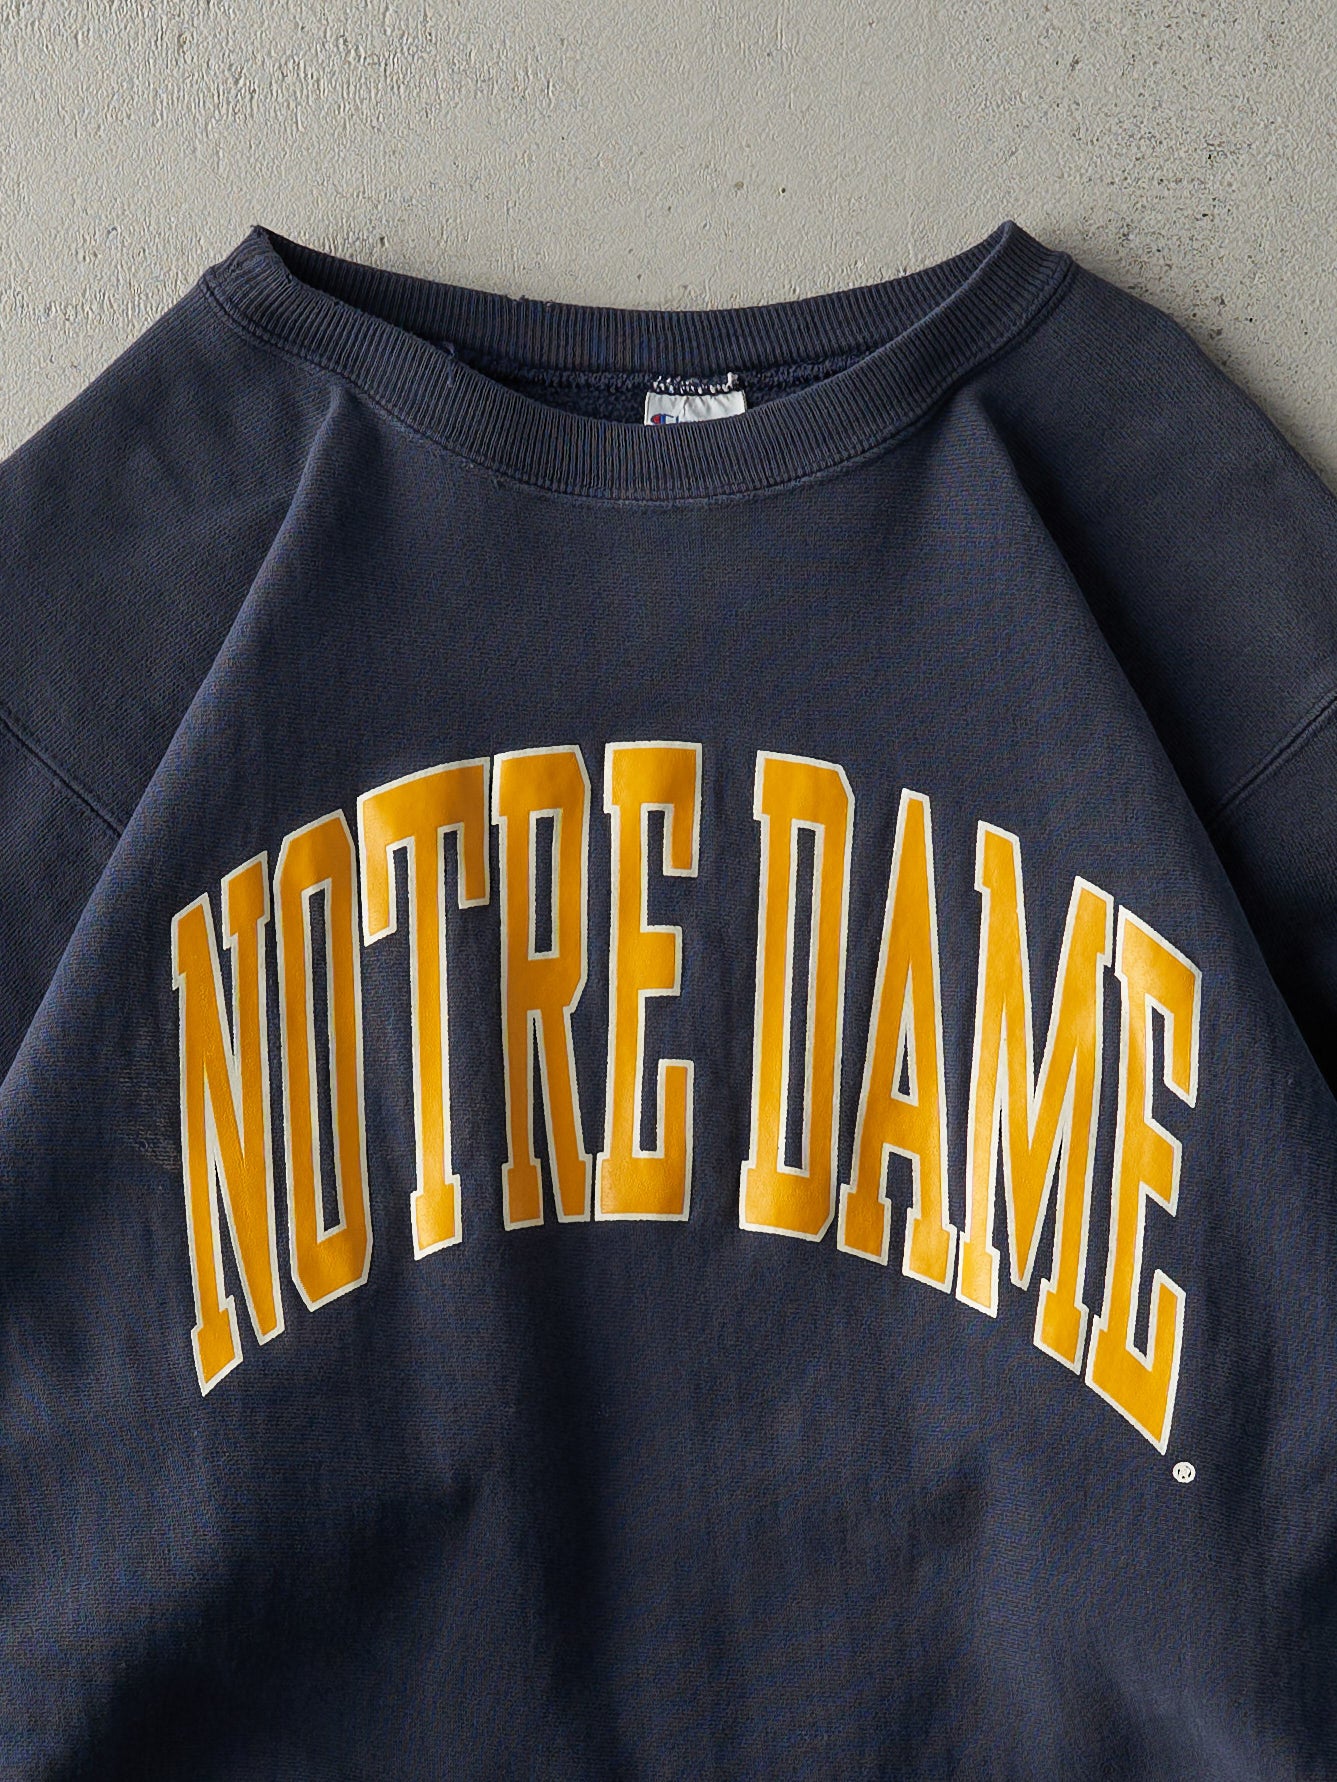 Vintage 90s Navy Notre Dame Champion Reverse Weave Crewneck (M)